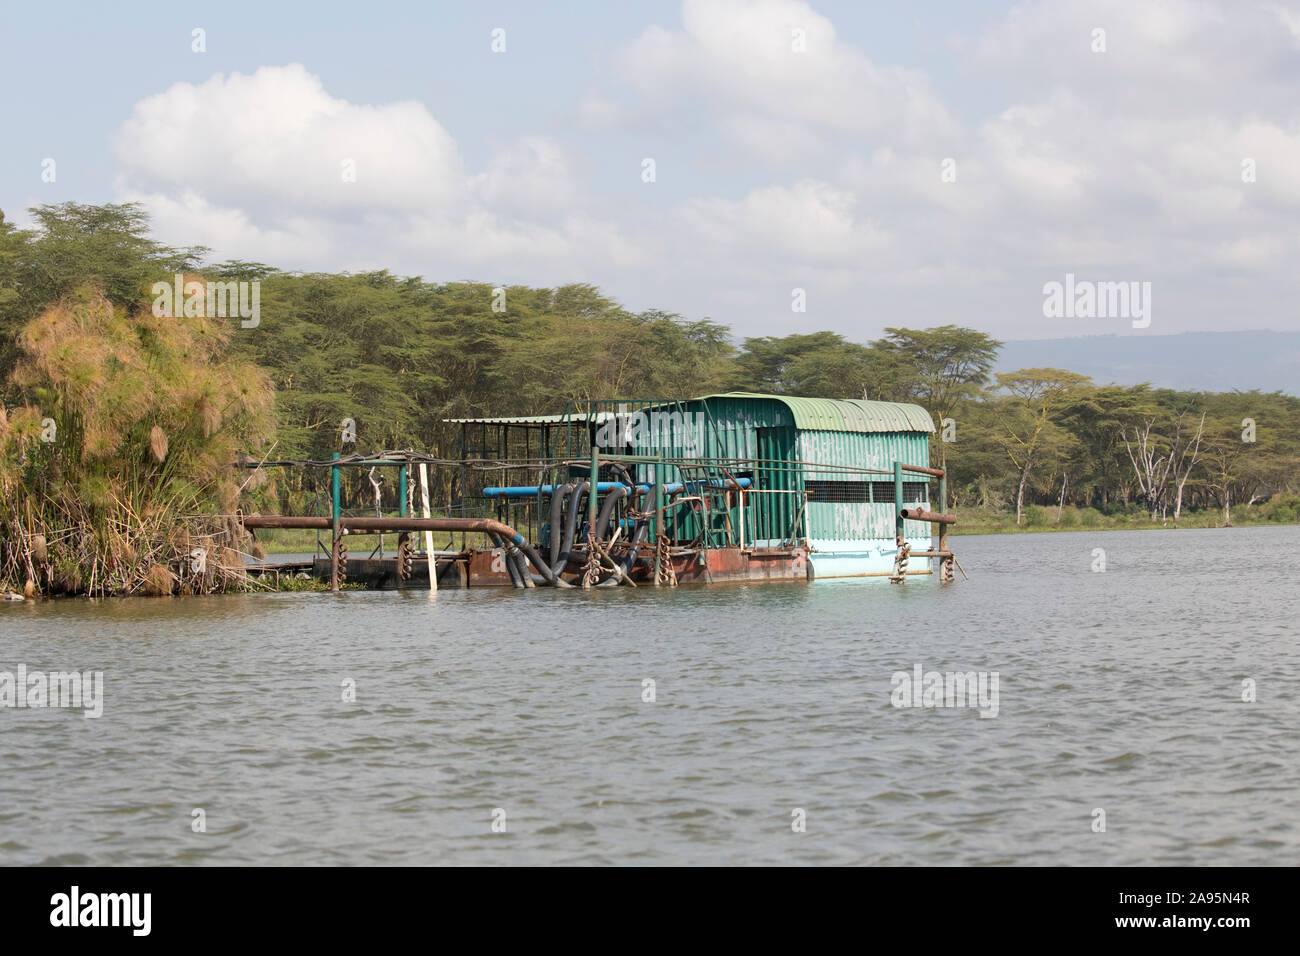 Pumping station, drawing water from lake to flower farms, Lake Naivasha, Kenya Stock Photo